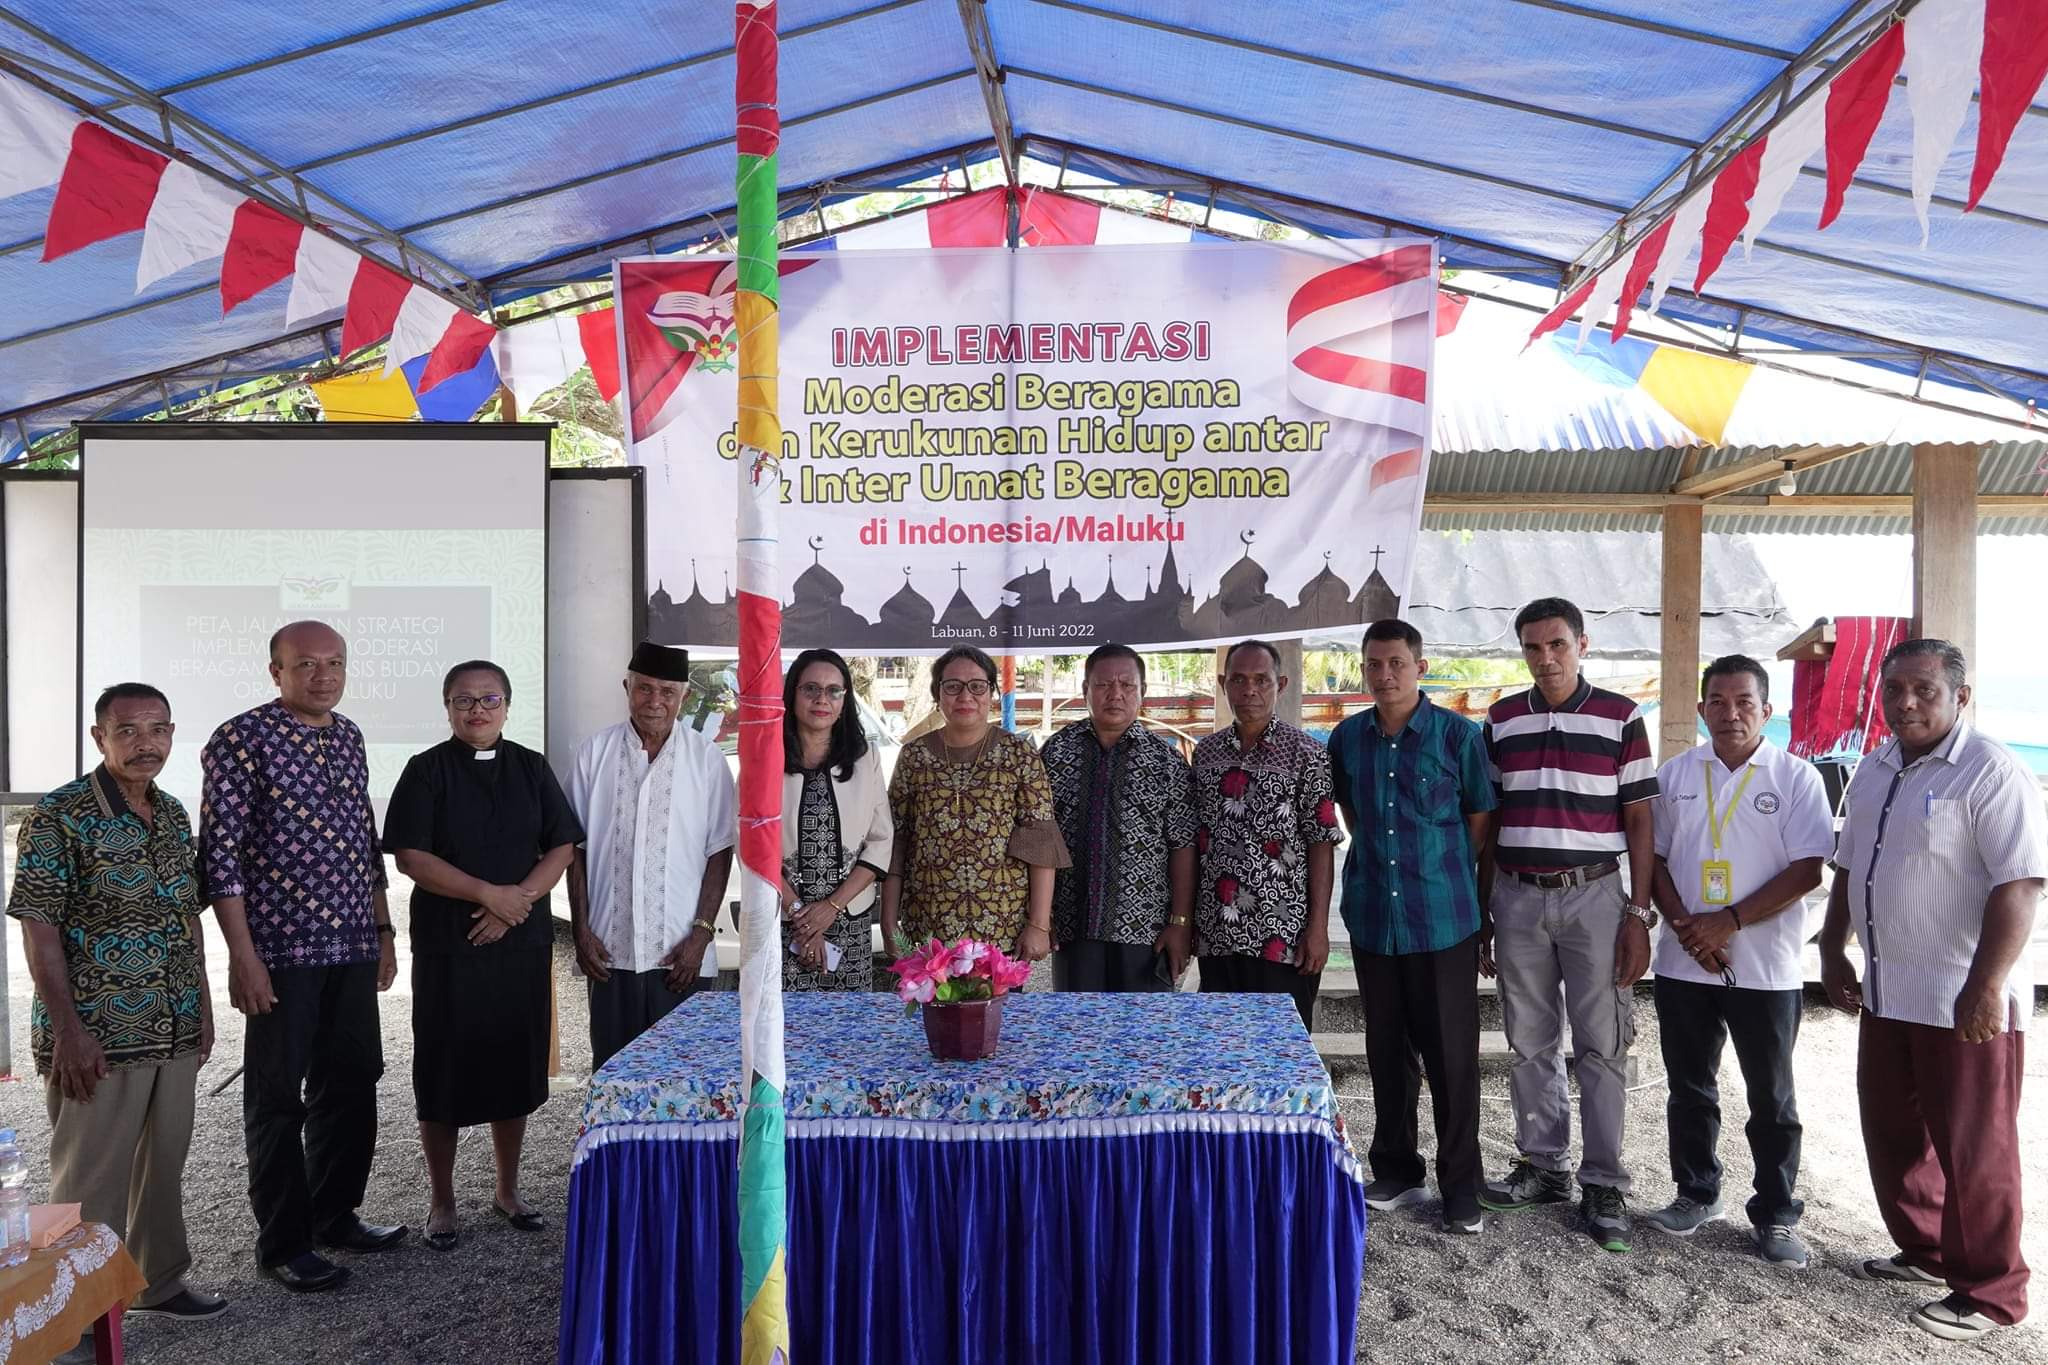 Implementasi Moderasi Beragama, Program Pascasarjana IAKN Ambon lakukan PKM di Labuan Pulau tujuh